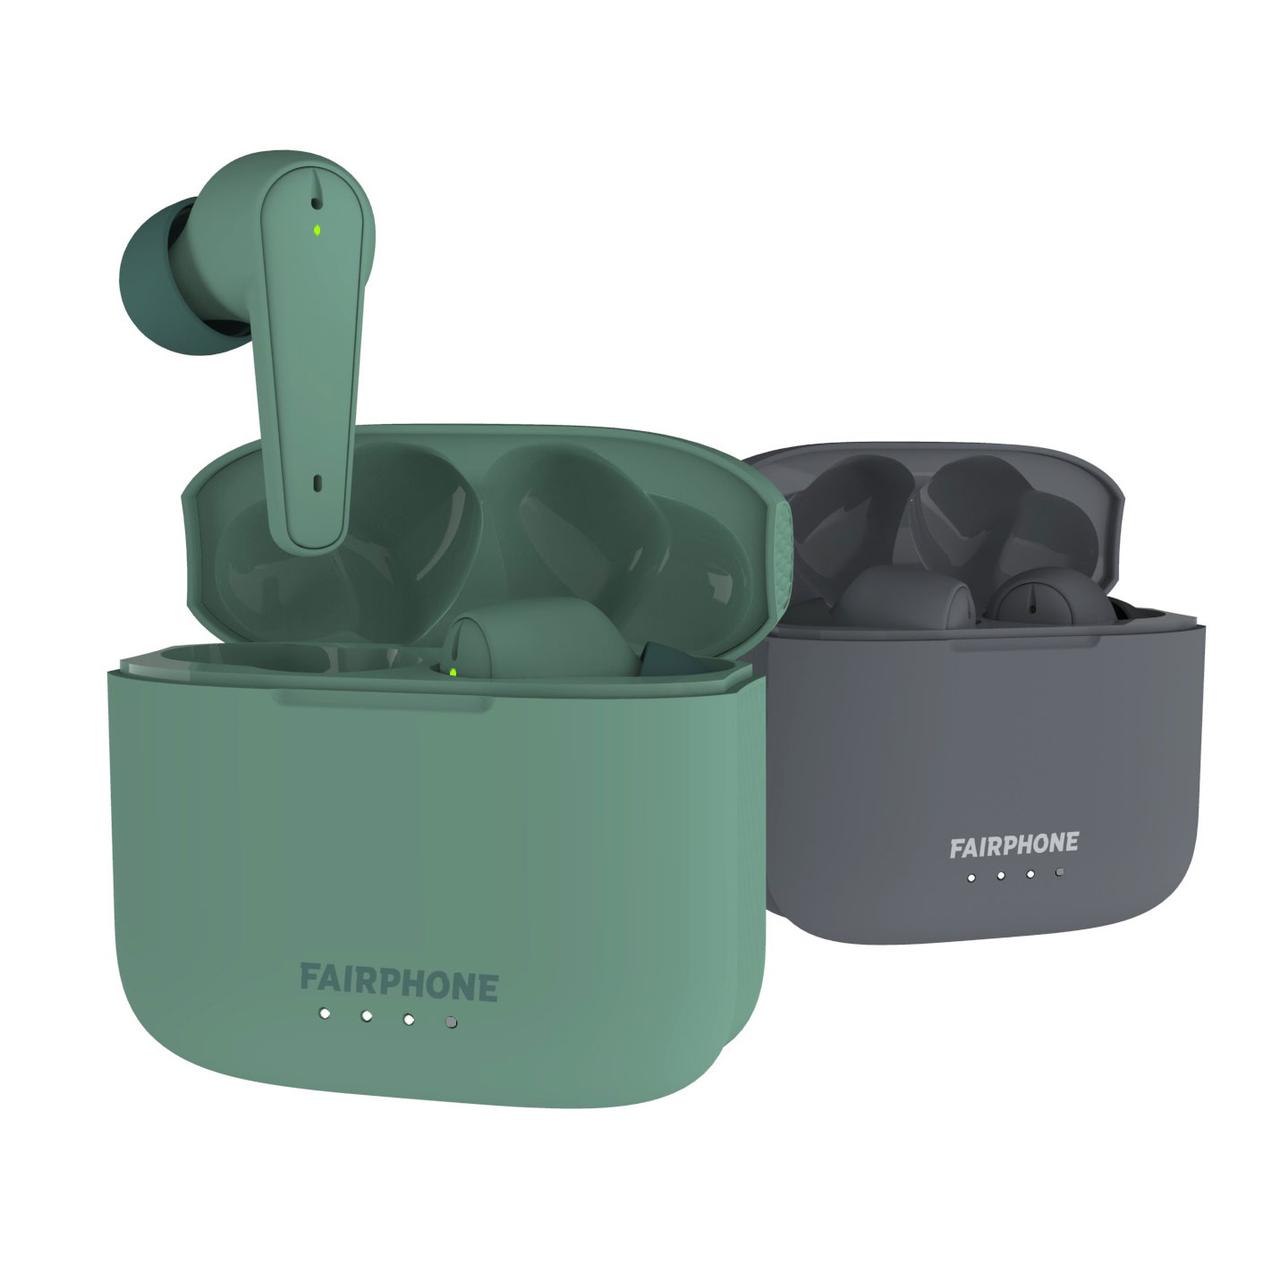 kabellose In-Ear-Kopfhörer mit Ladebuchse, erhältlich in 2 Farben, grün oder grau, wie das Fairphone 4